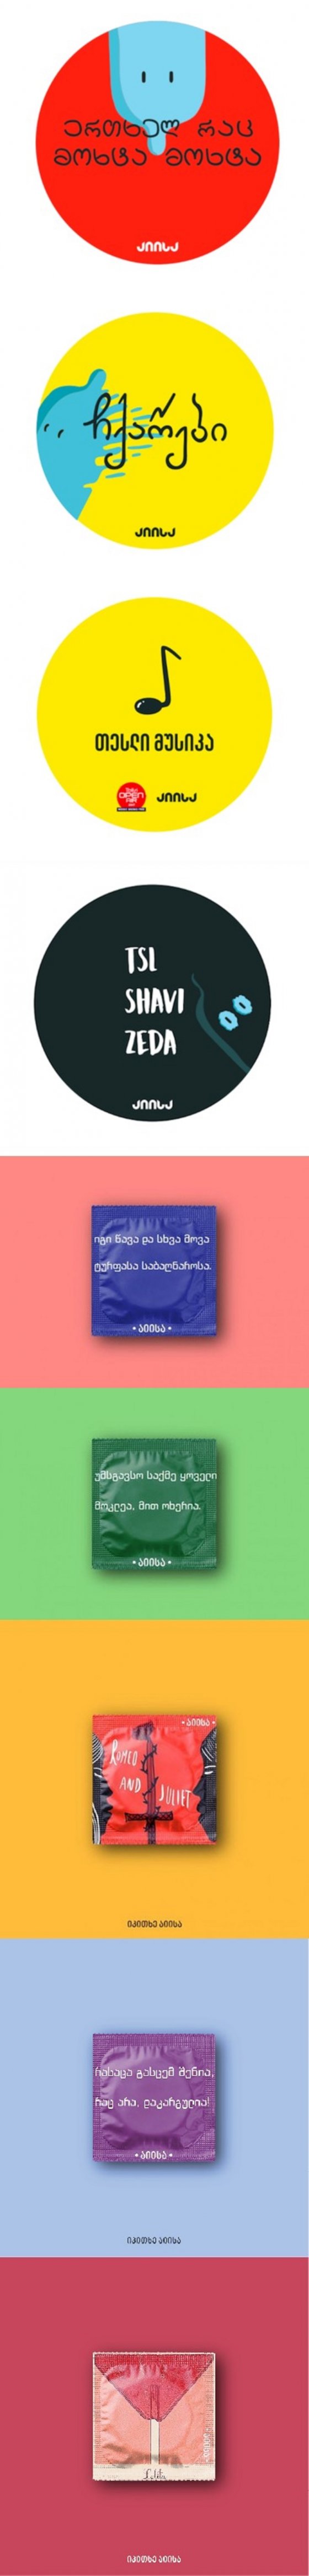 პირველი ქართული პრეზერვატივი "აიისა"ორიგინალური შეფუთვით და წარწერებით